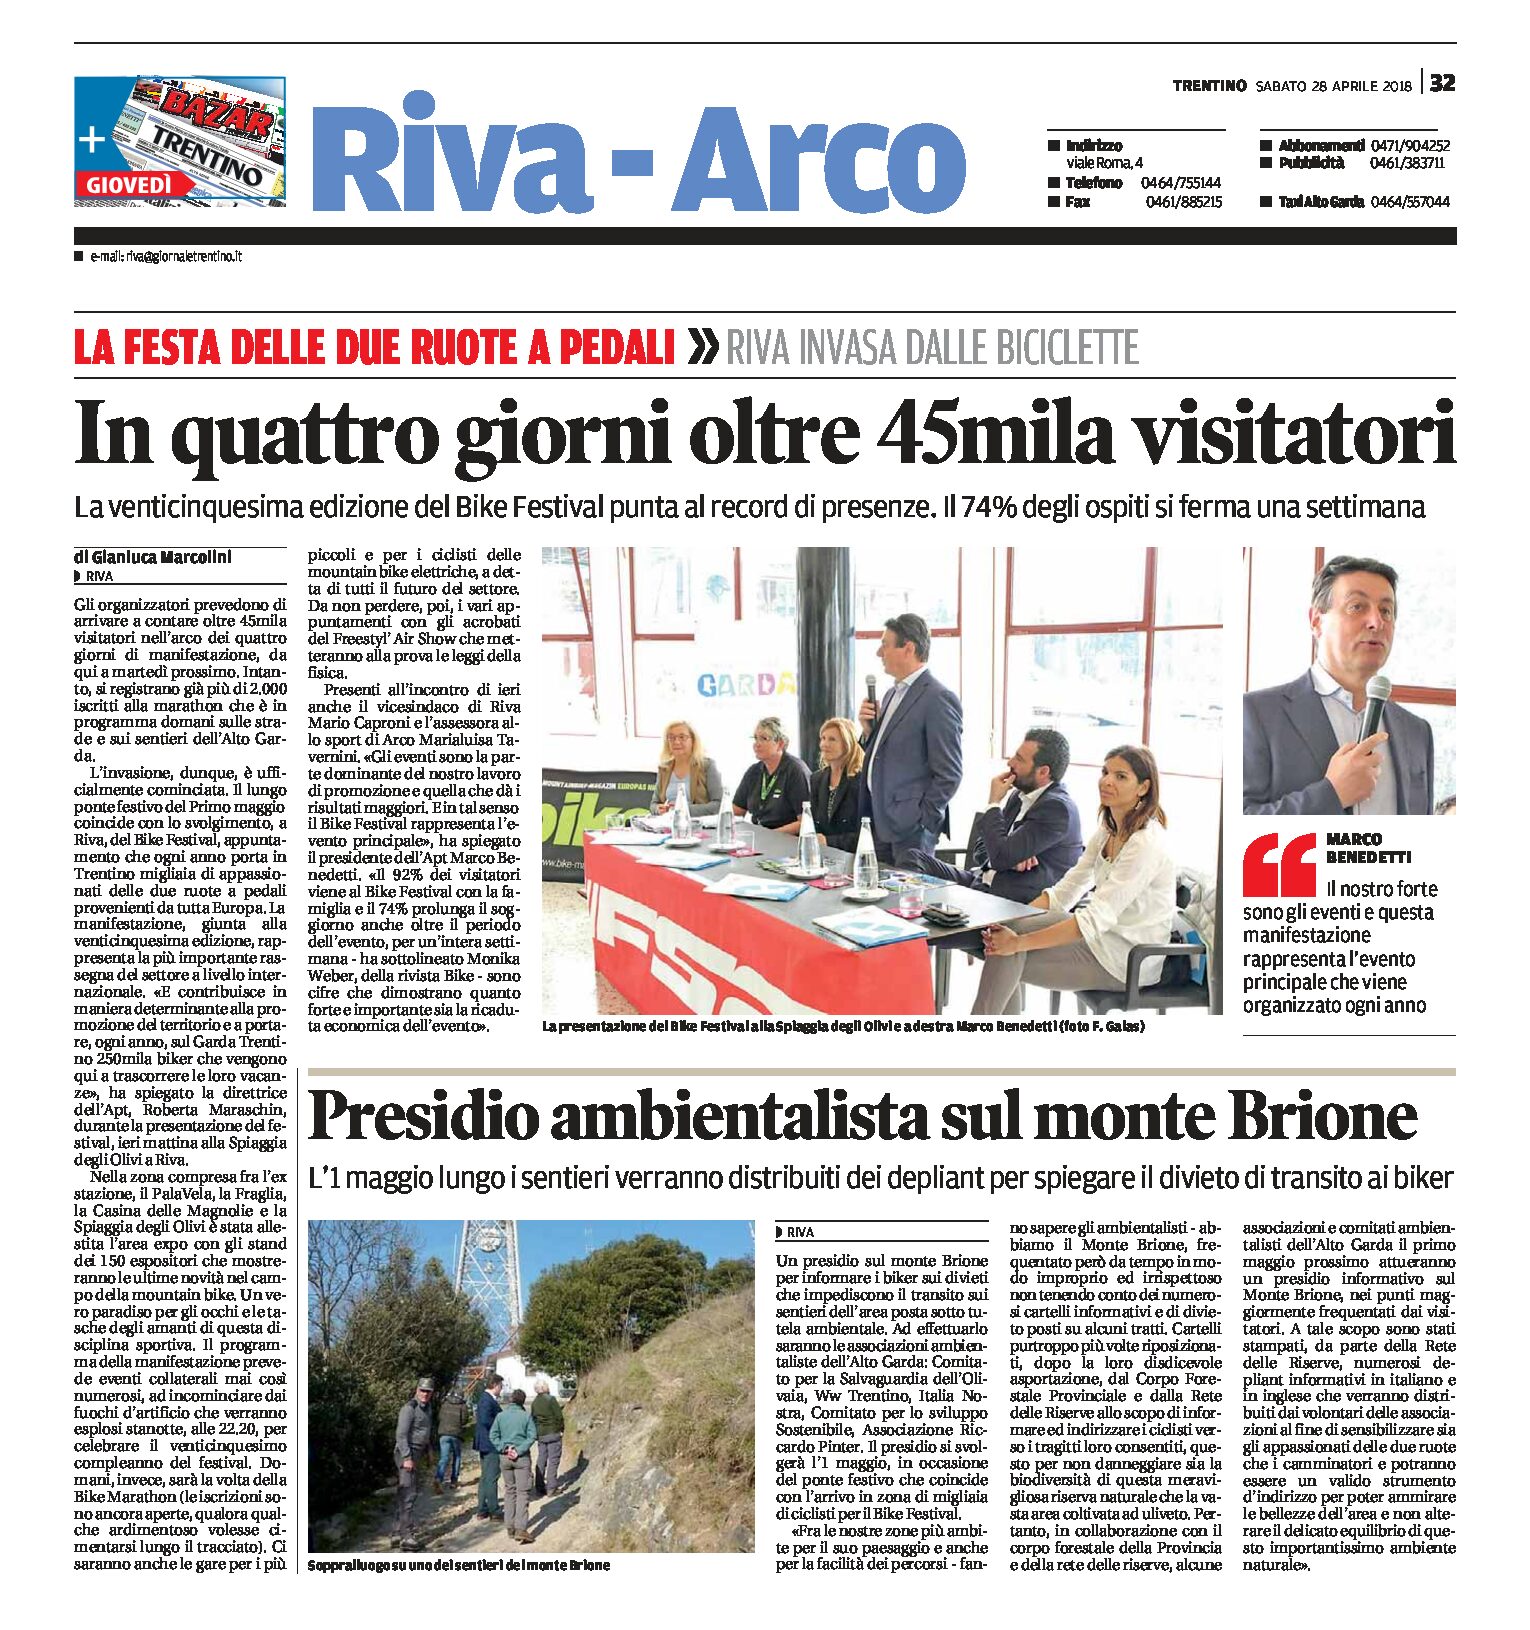 Garda, Bike Festival: presidio ambientalista sul monte Brione